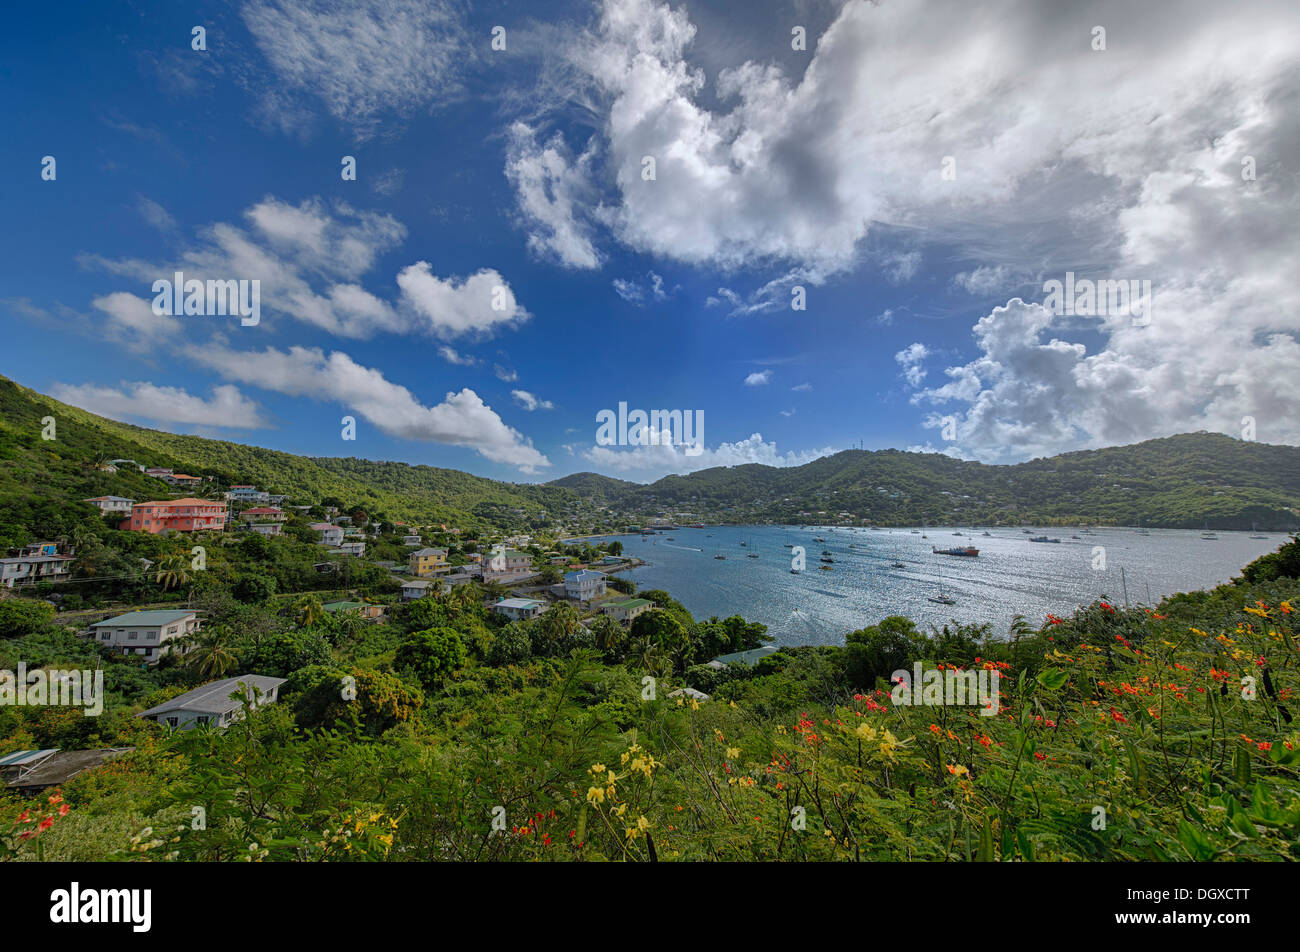 Bahía caribeña con casas y barcos, Santa Lucía Foto de stock